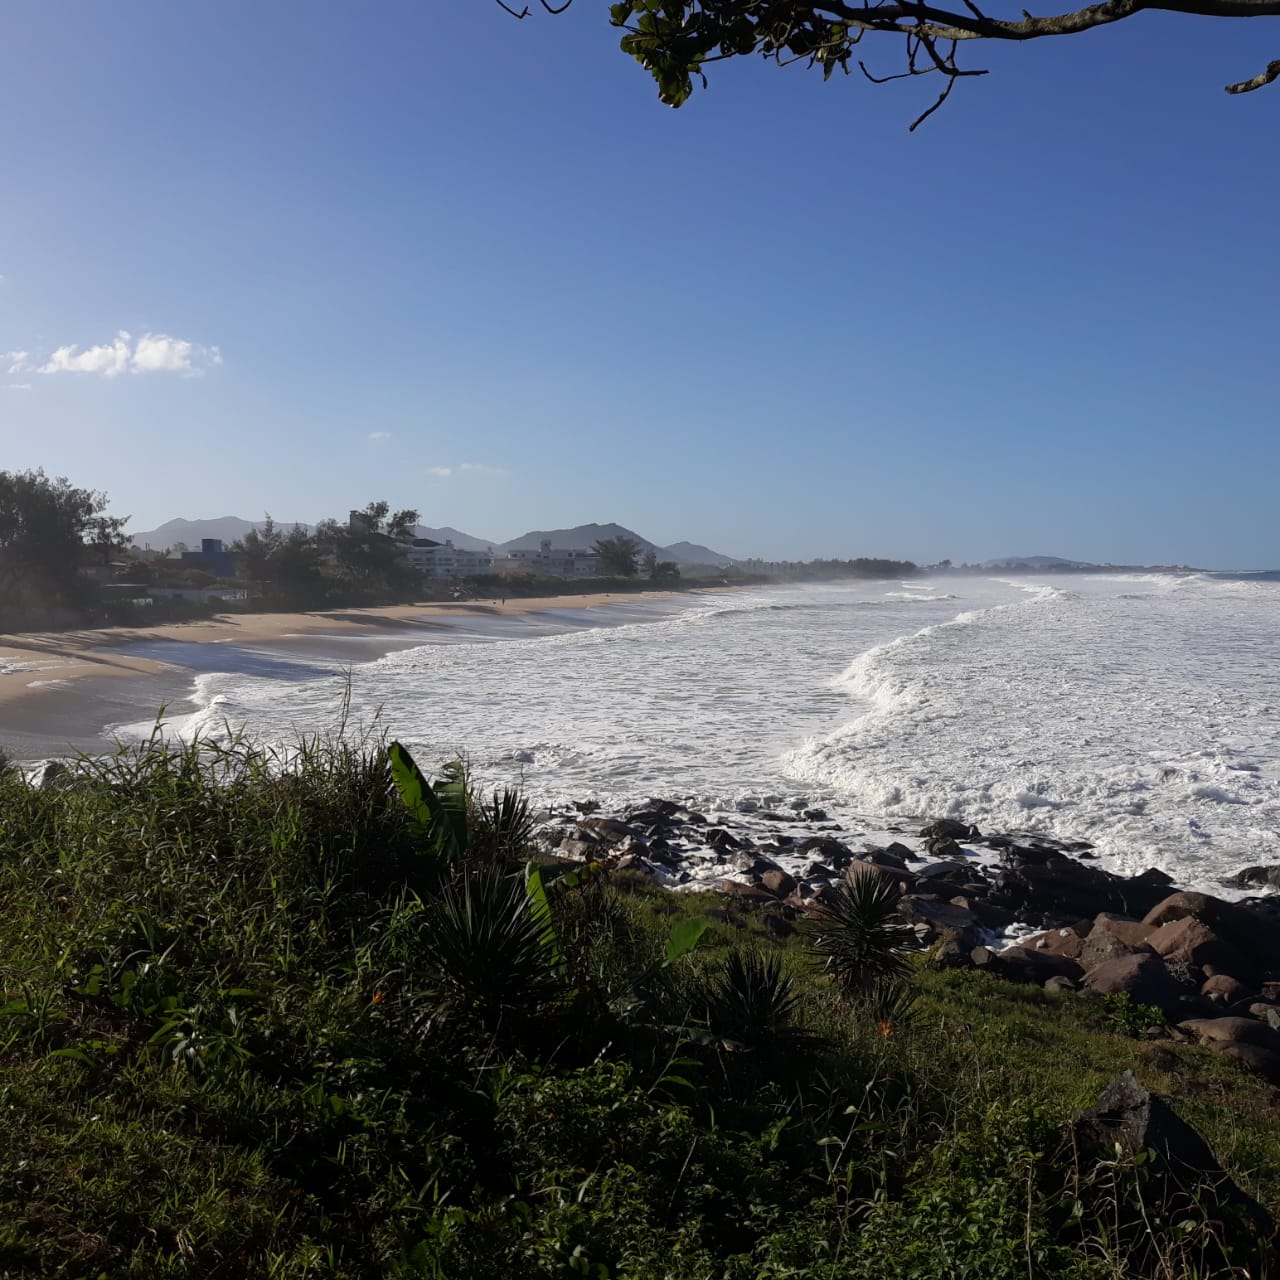 Mar ficará agitado com ondas grandes no litoral da Grande Florianópolis |  Foto Ewaldo Willerding/Arquivo OCP